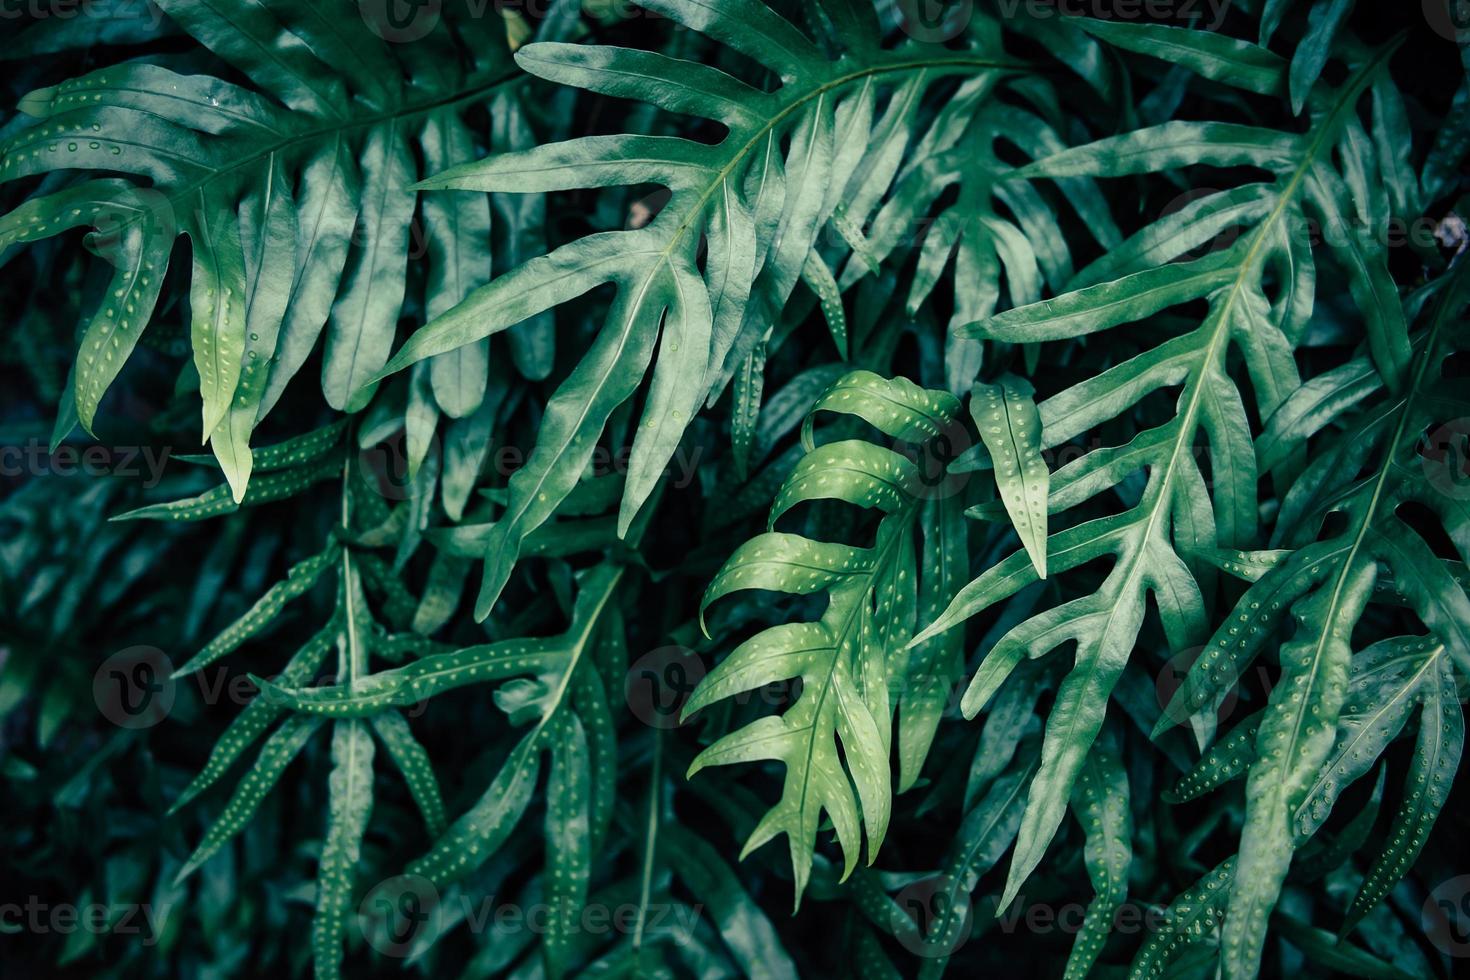 sfondo foglia verde tropicale, tema tono scuro. foto